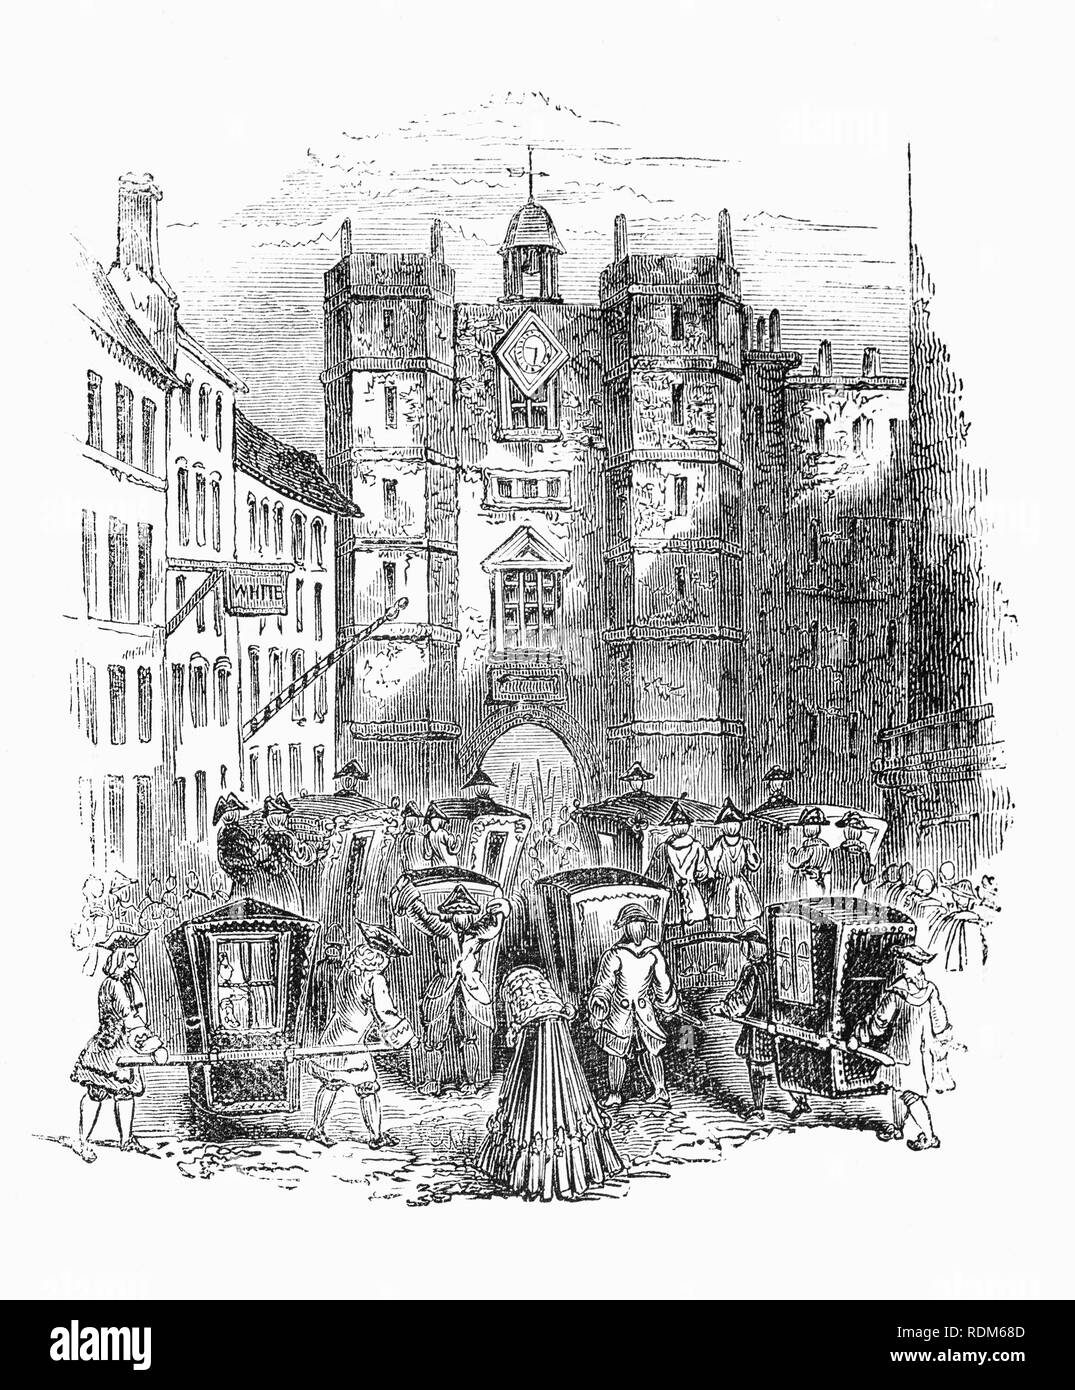 La Pall Mall porte de St James's Palace, dans la ville de Westminster. Construit par le roi Henri VIII sur l'emplacement d'une léproserie dédiée à Saint Jacques le moins, le palais a été secondaire en importance pour le palais de Whitehall pour la plupart des monarques Tudor et Stuart. Le palais de l'importance pendant les règnes de la monarchie géorgienne au début, mais a été déplacée par le Palais de Buckingham à la fin du xviiie et au début du 19e siècles. Banque D'Images